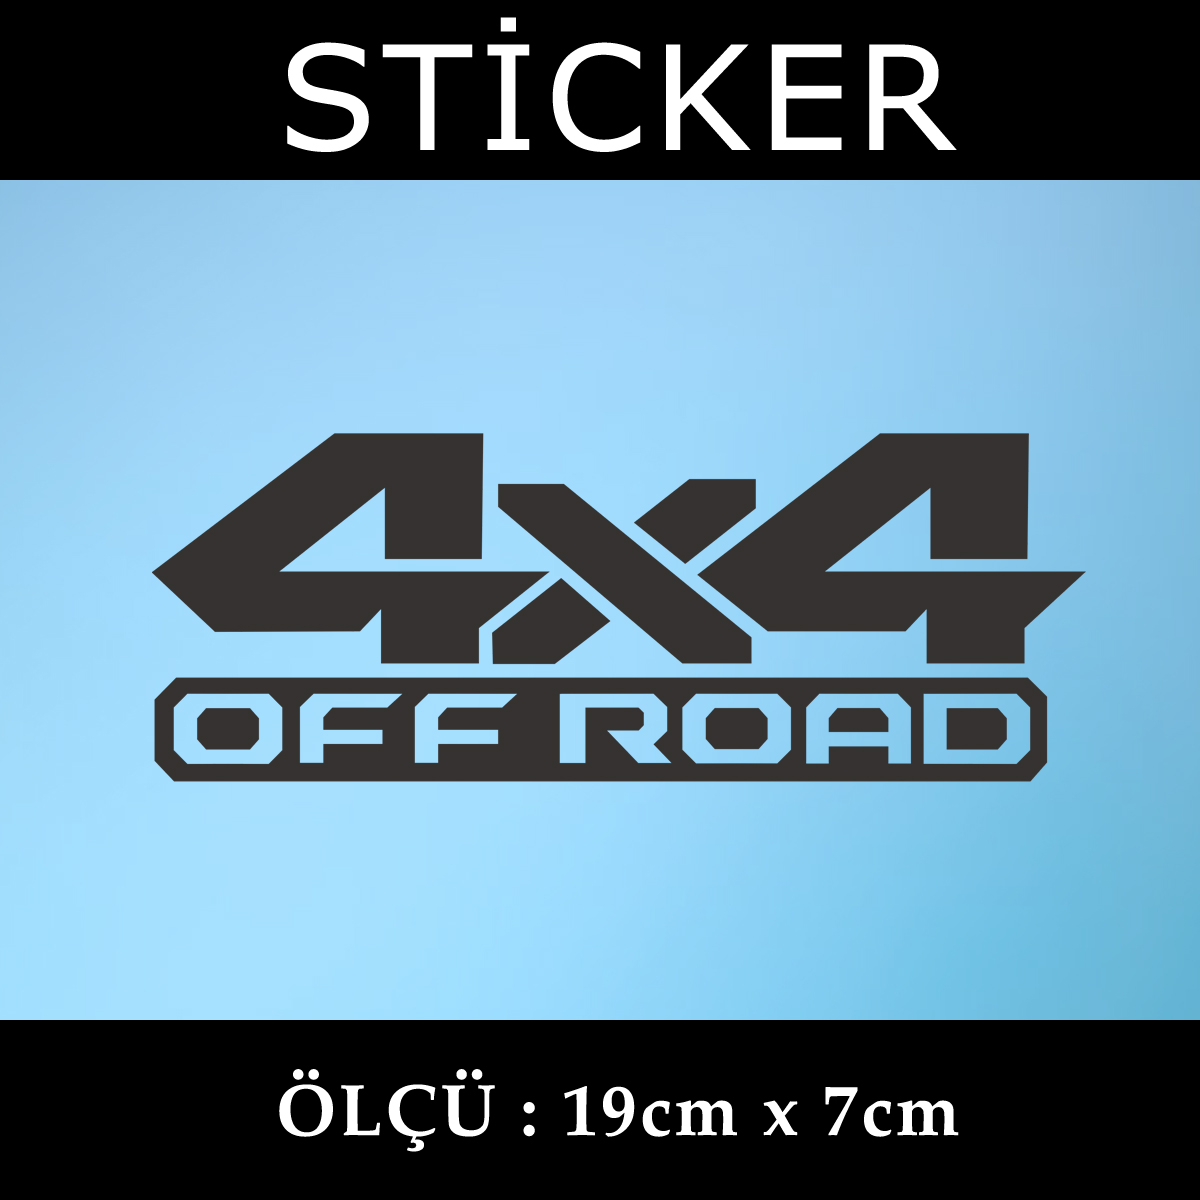 4x4 2 1 - 4x4 offroad sticker